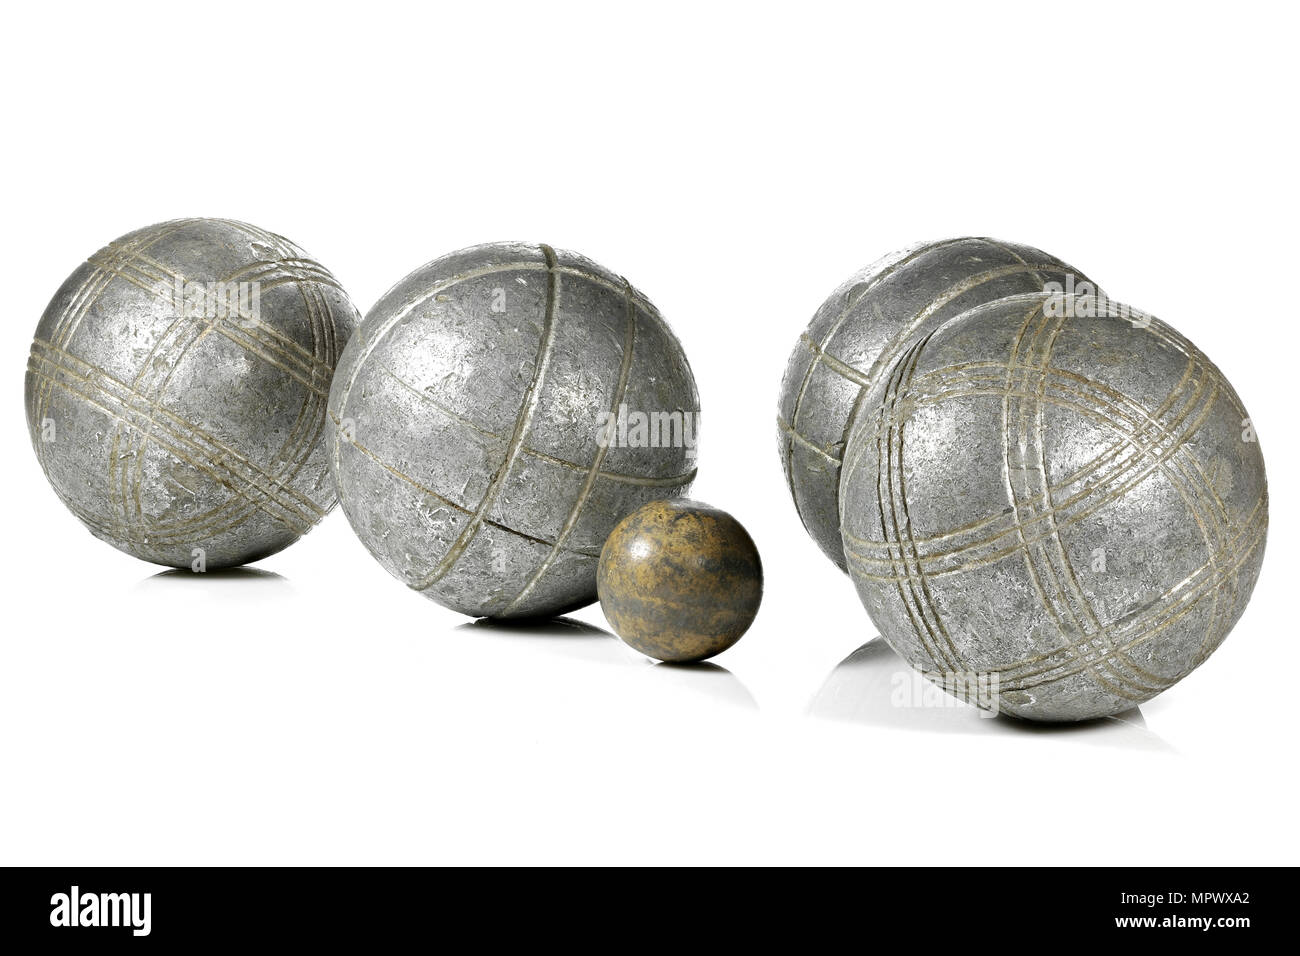 Petanque balls